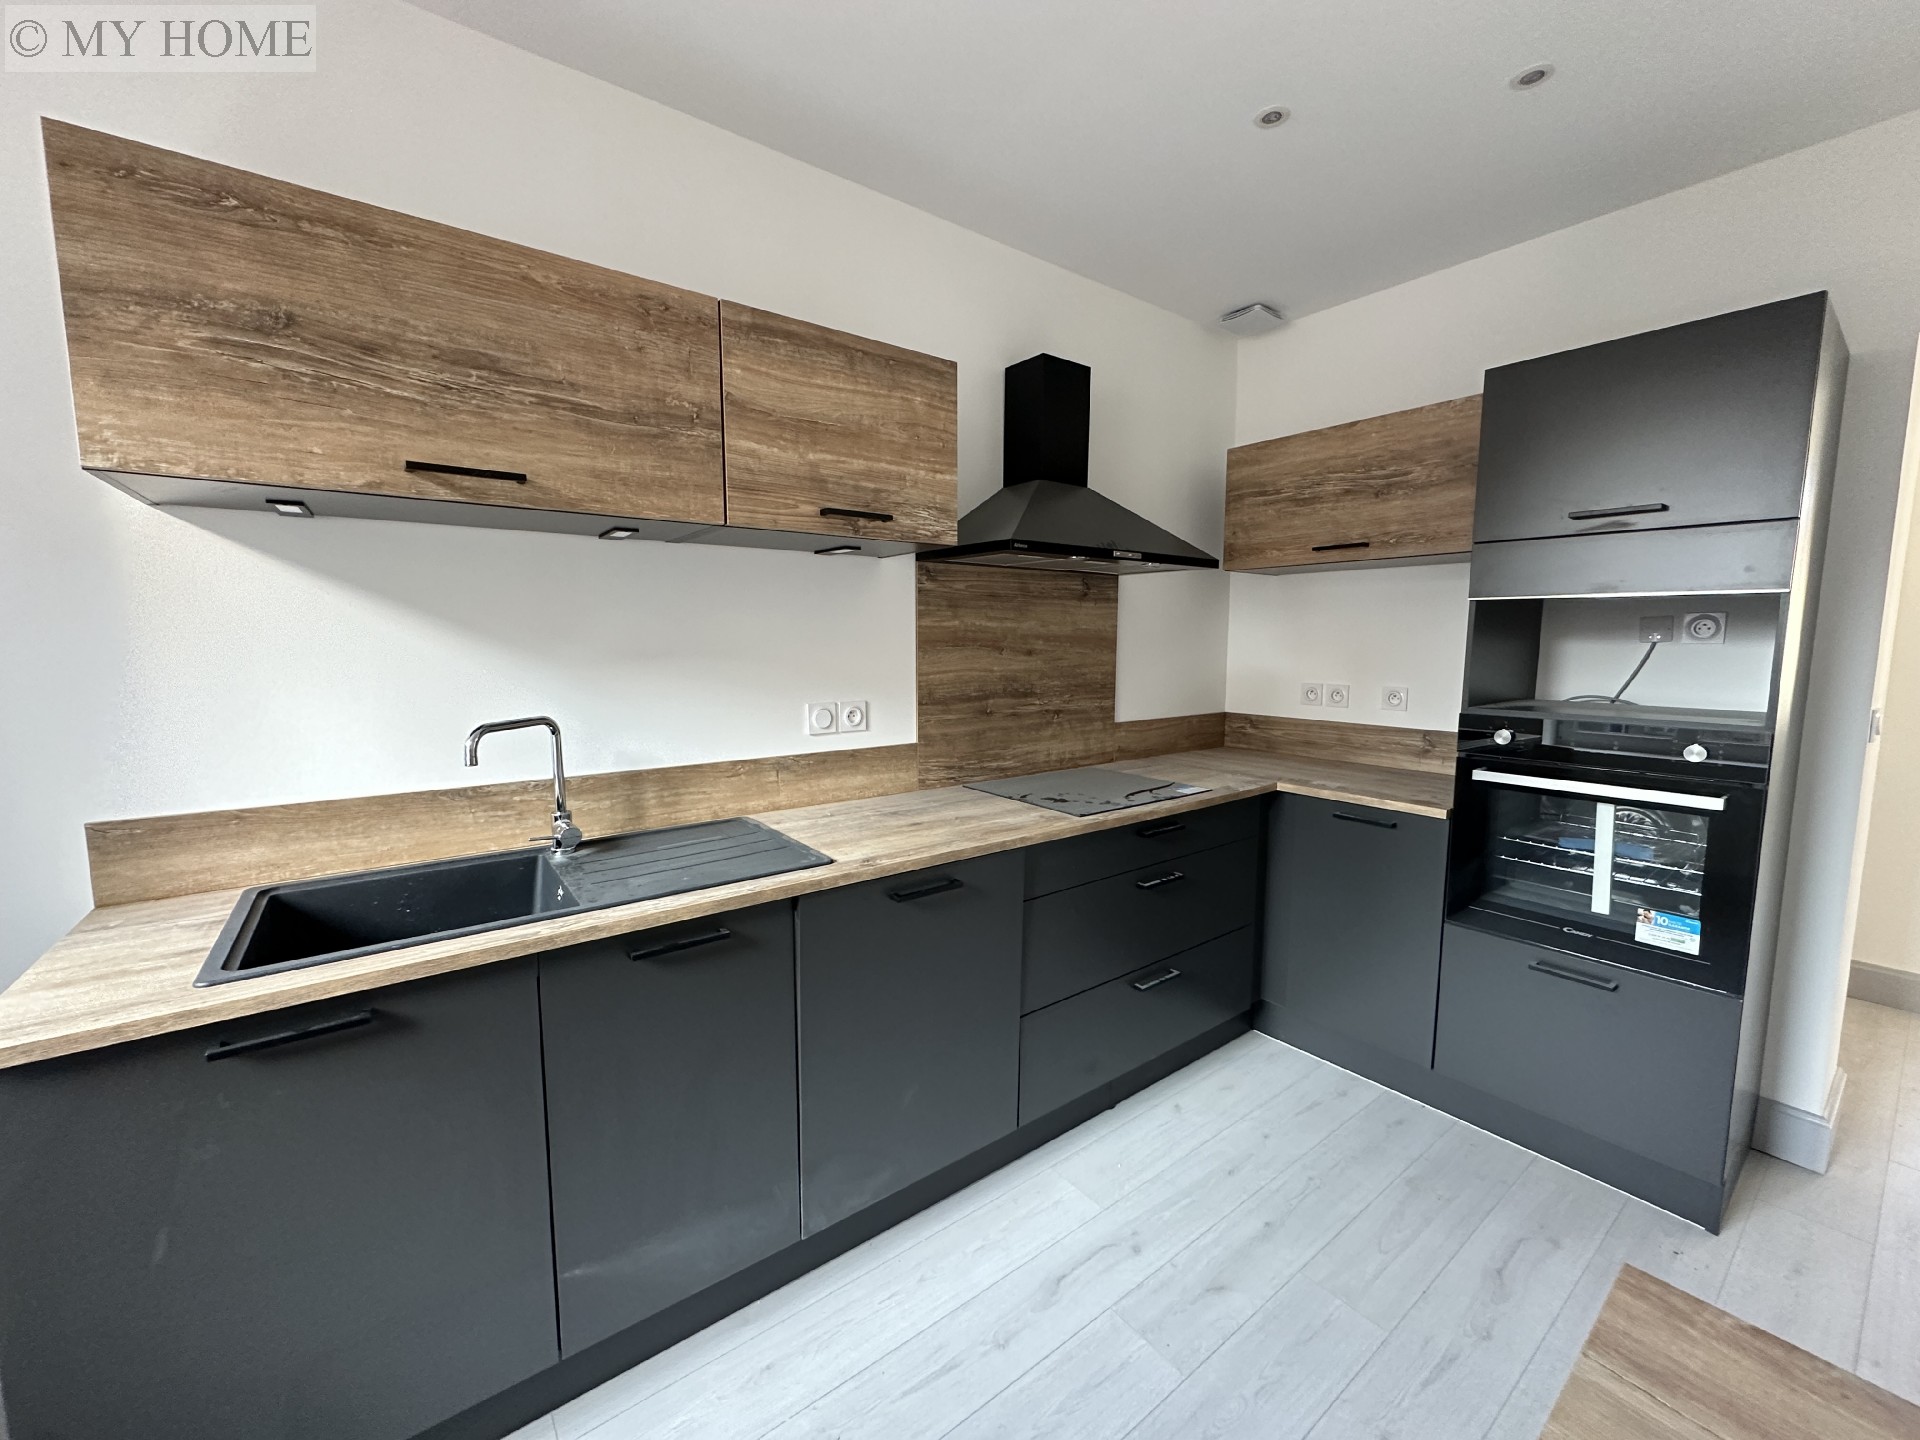 Vente appartement - TOUL 103 m², 4 pièces